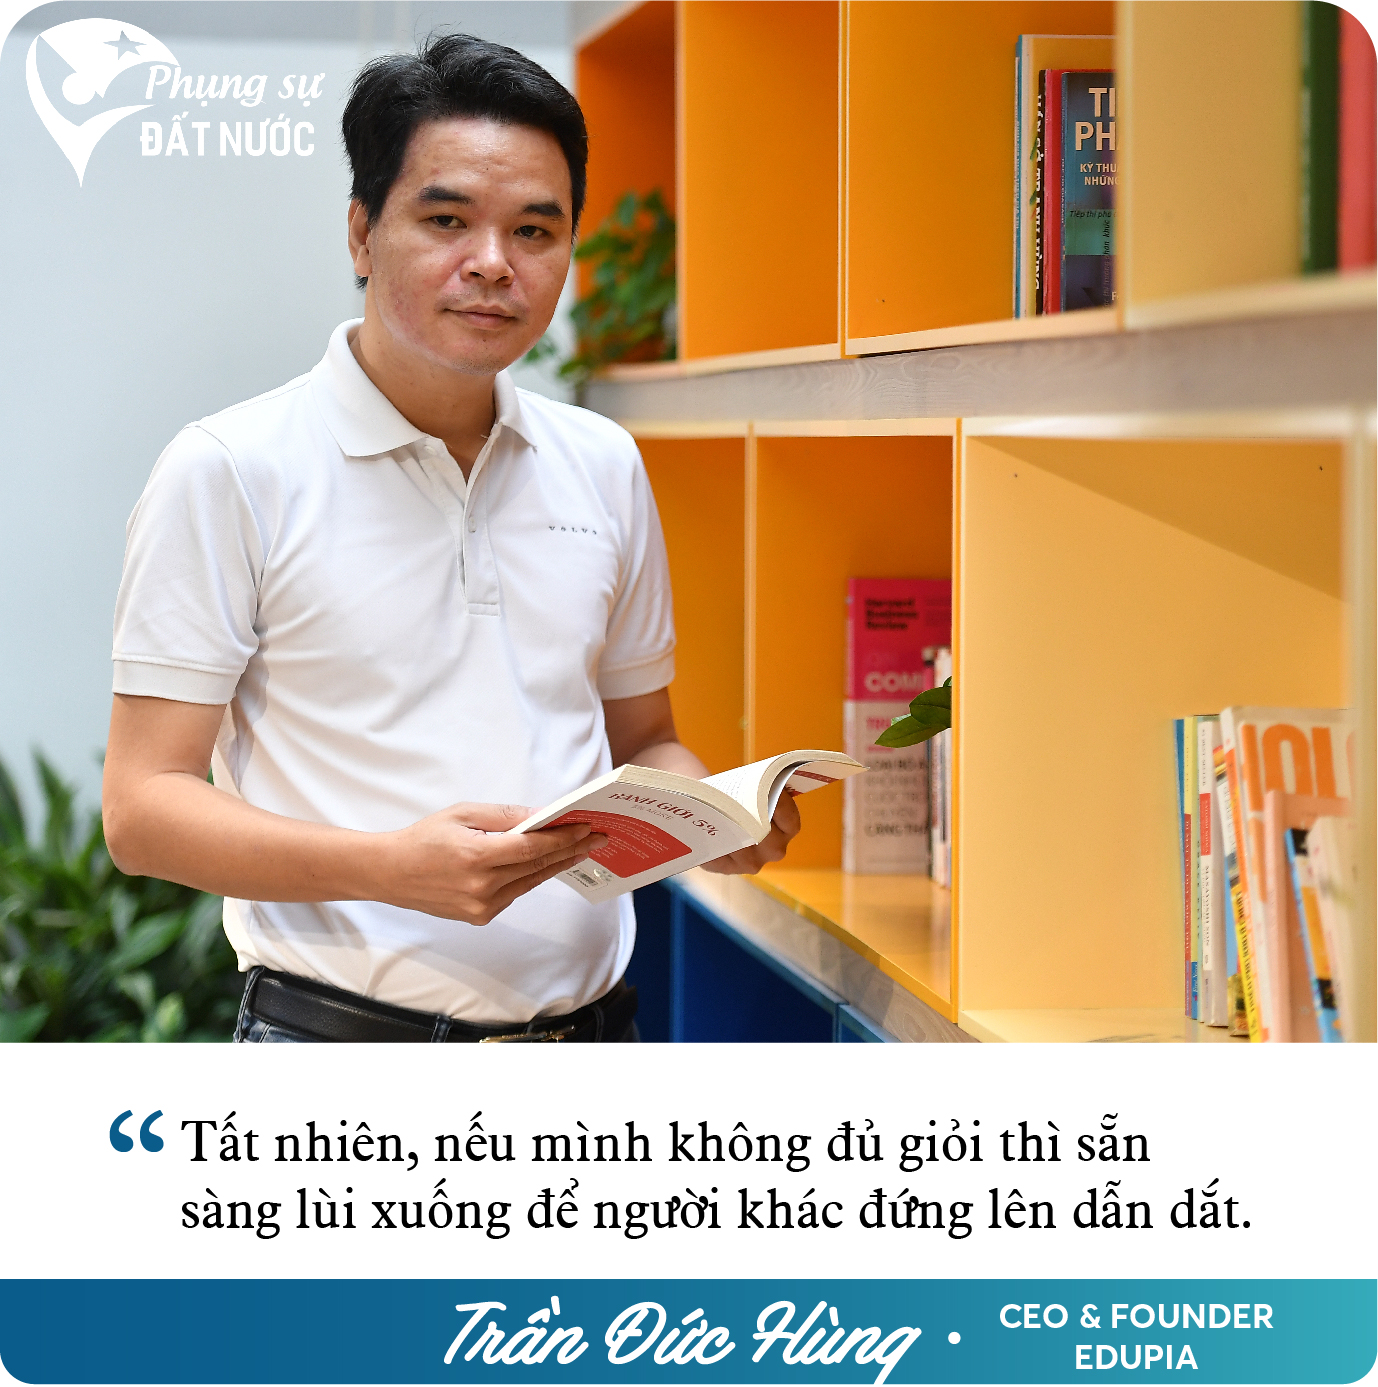 Cựu Giám đốc Digital của Viettel Telecom khởi nghiệp, lập nên Edtech dạy tiếng Anh số 1 Việt Nam: Tìm thấy cơ hội khi về quê, mơ thành ‘cận kỳ lân’ năm 2025 - Ảnh 12.